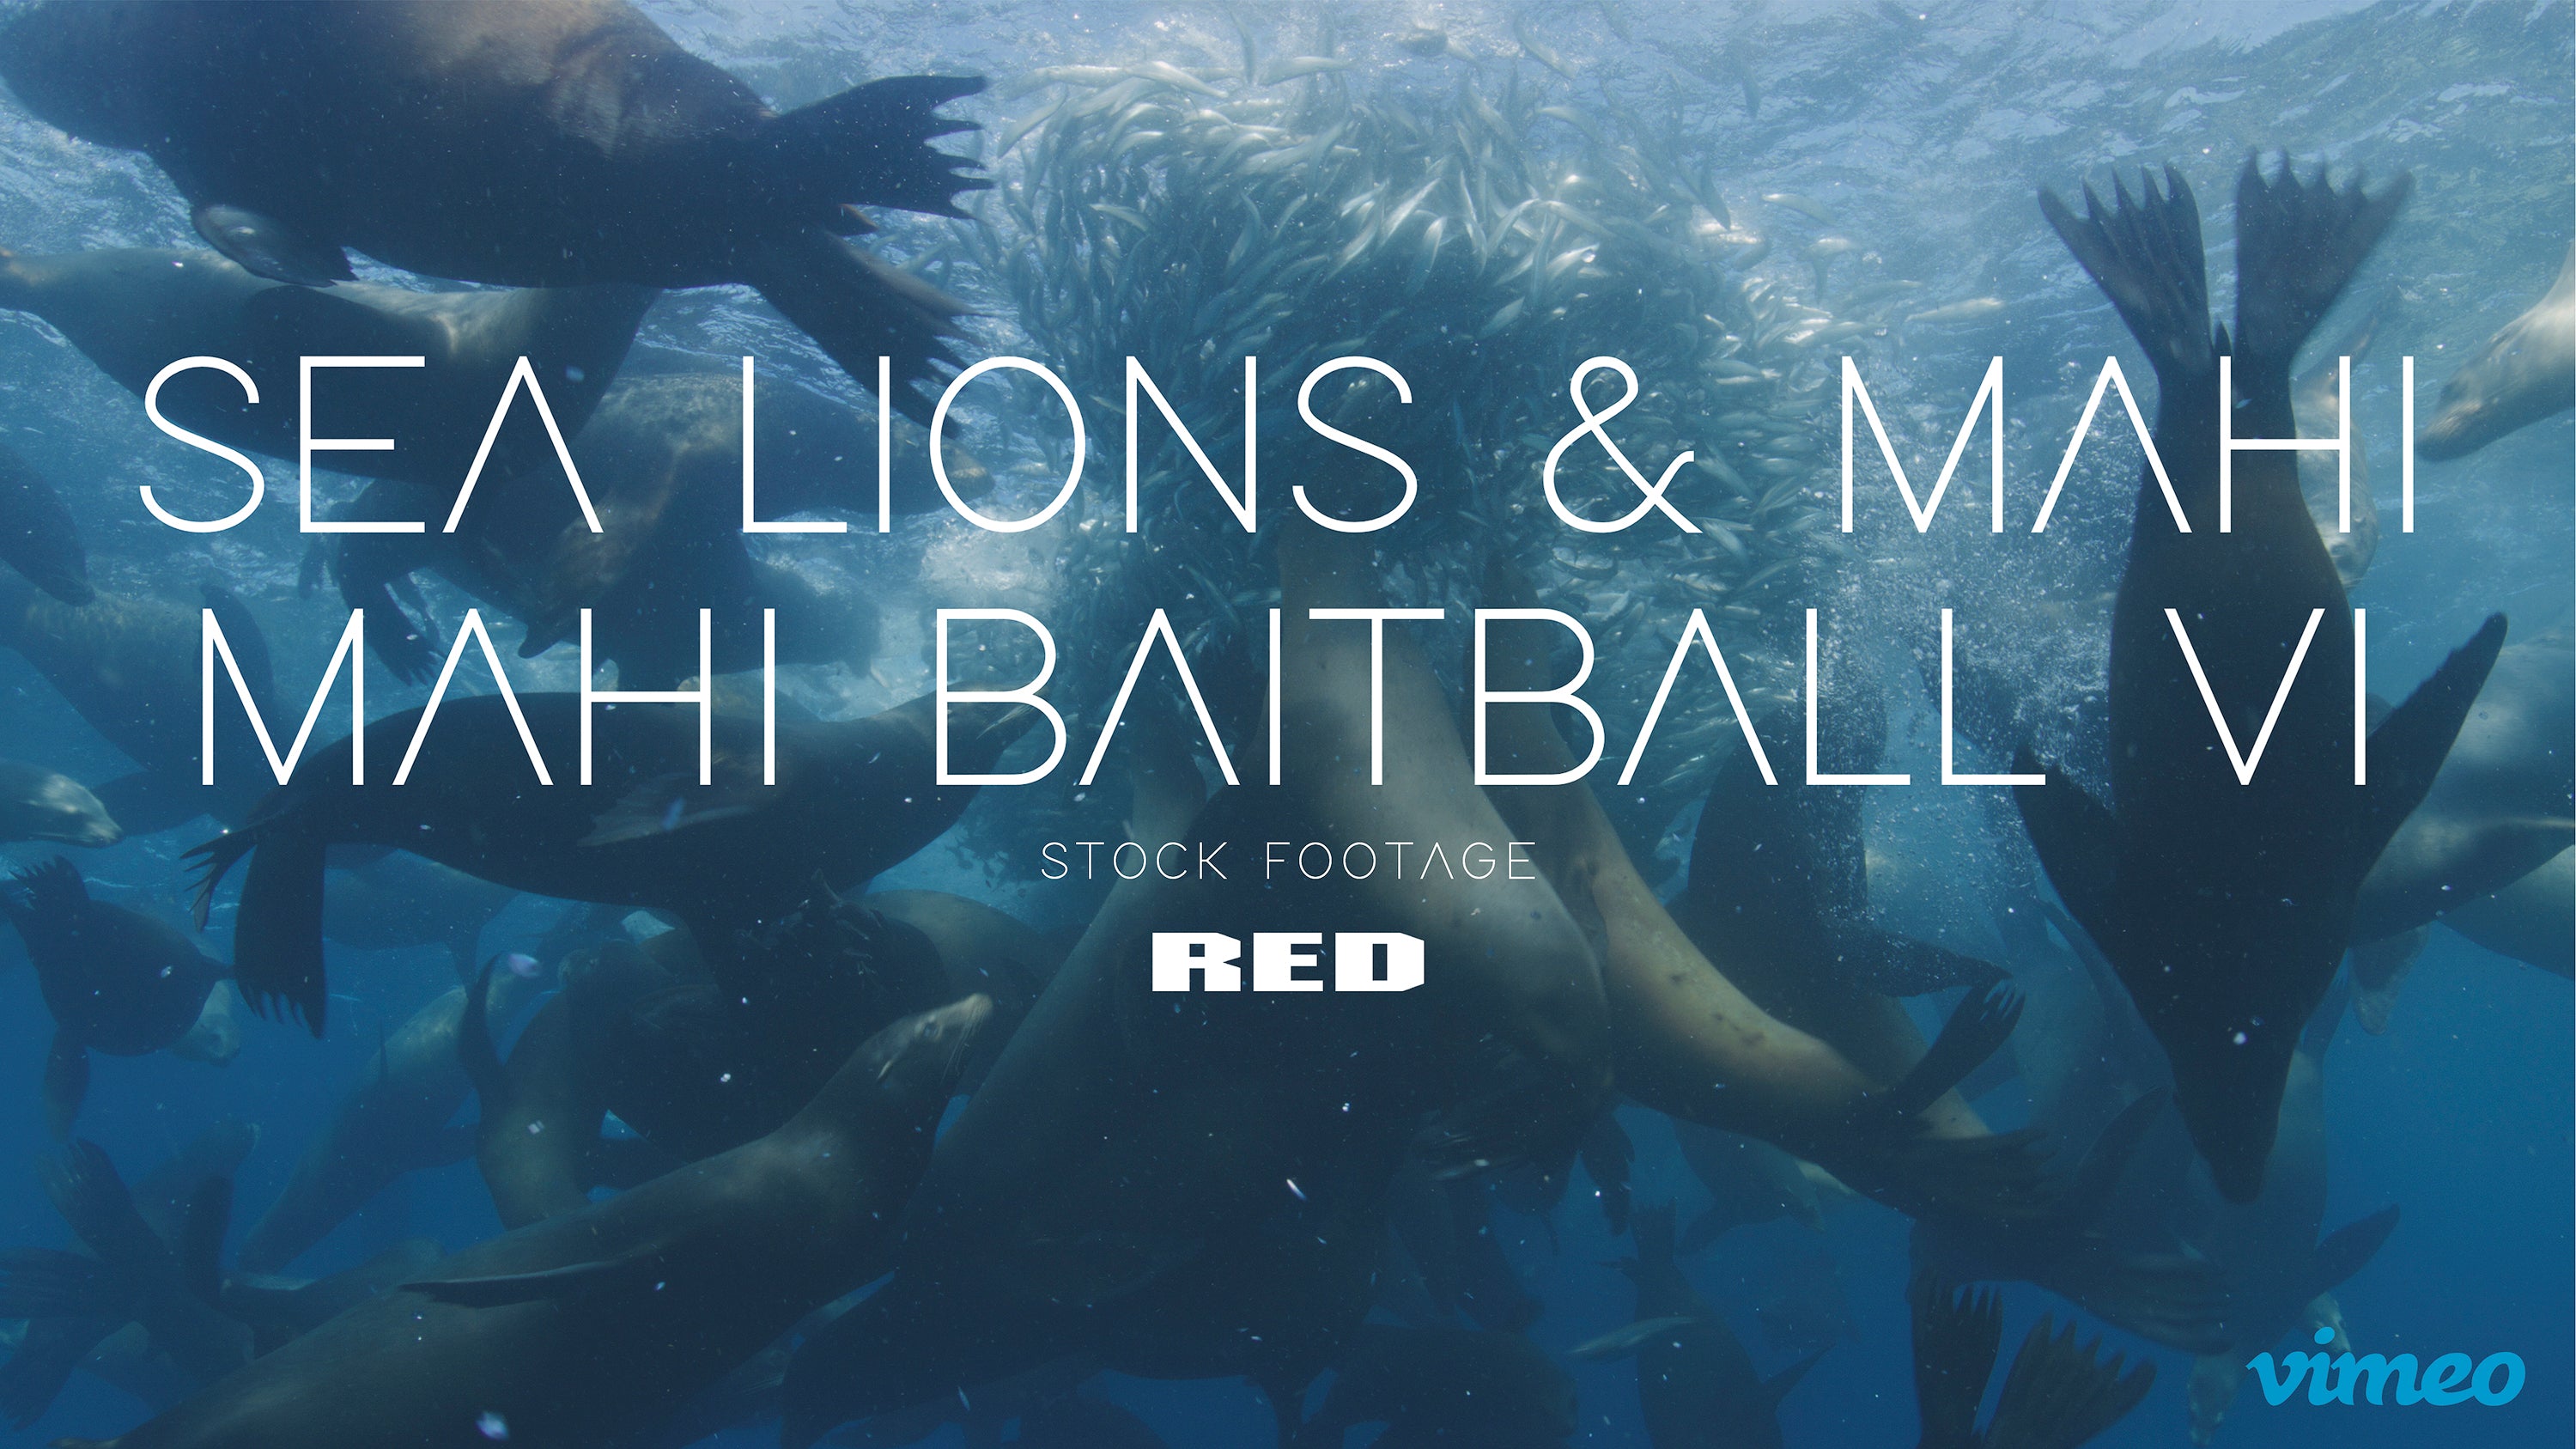 Sea lions & Mahi mahi baitball VI